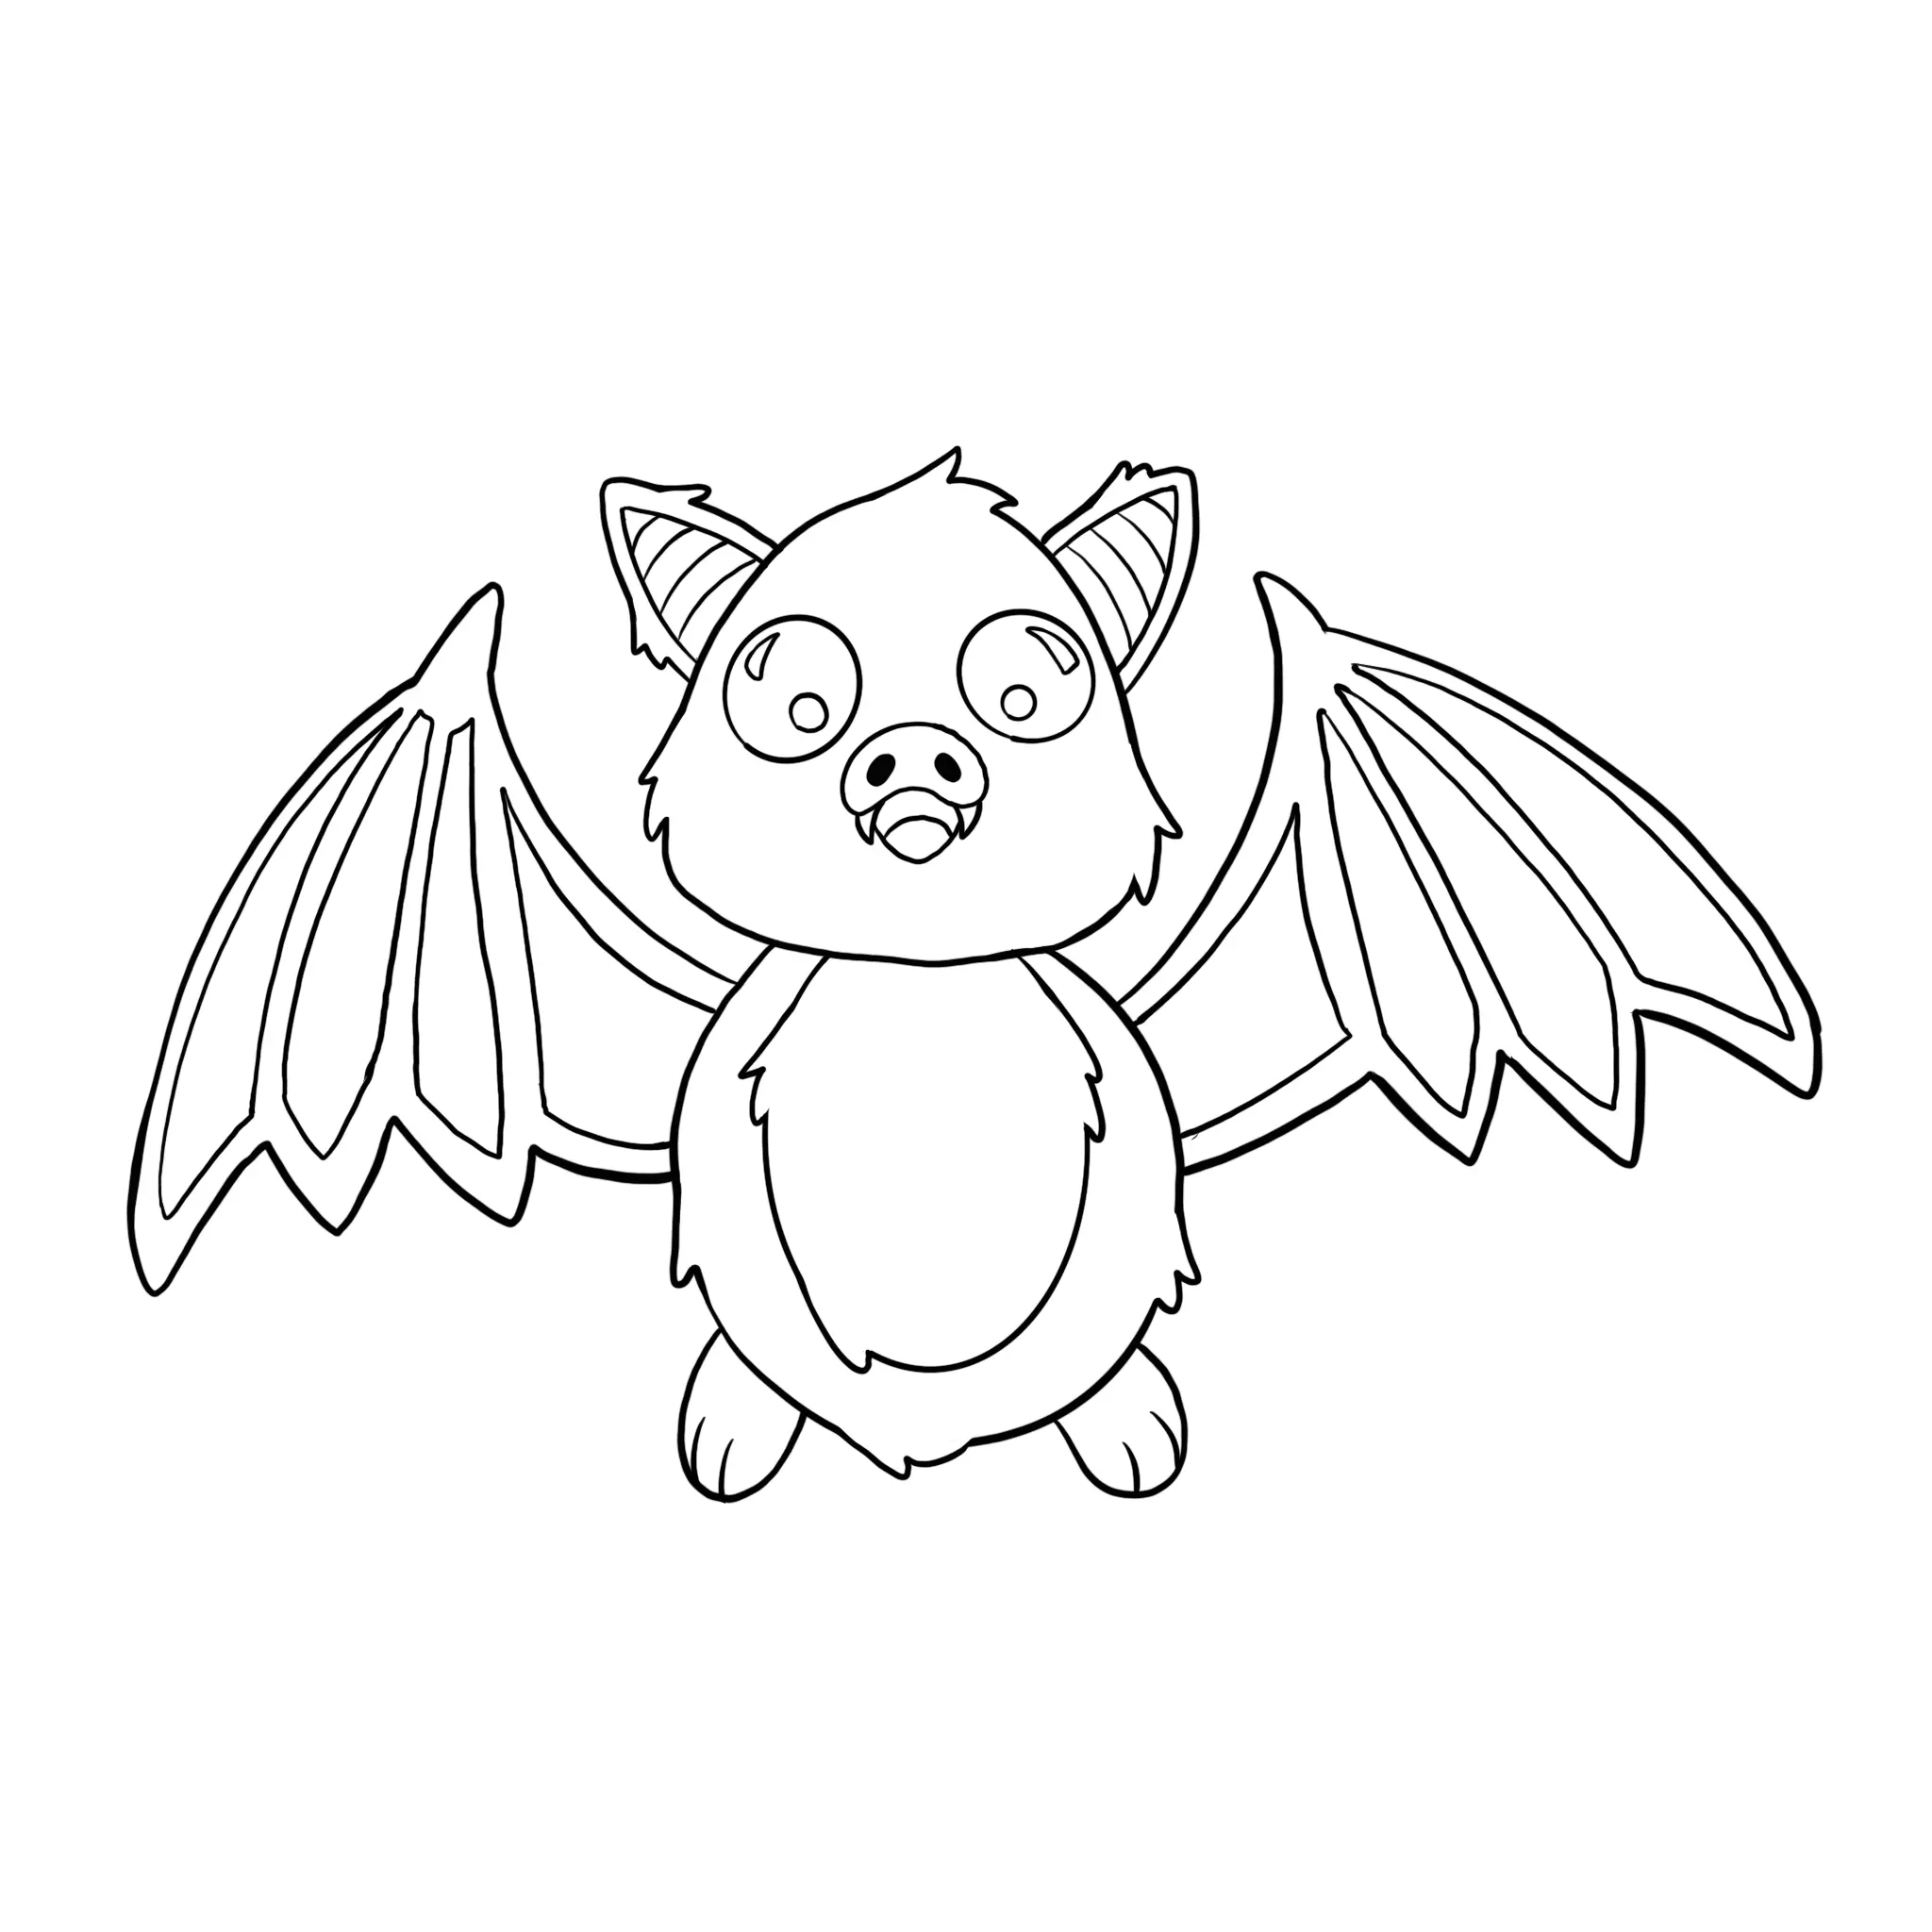 dessin de la fourrure d’une chauve-souris kawaii